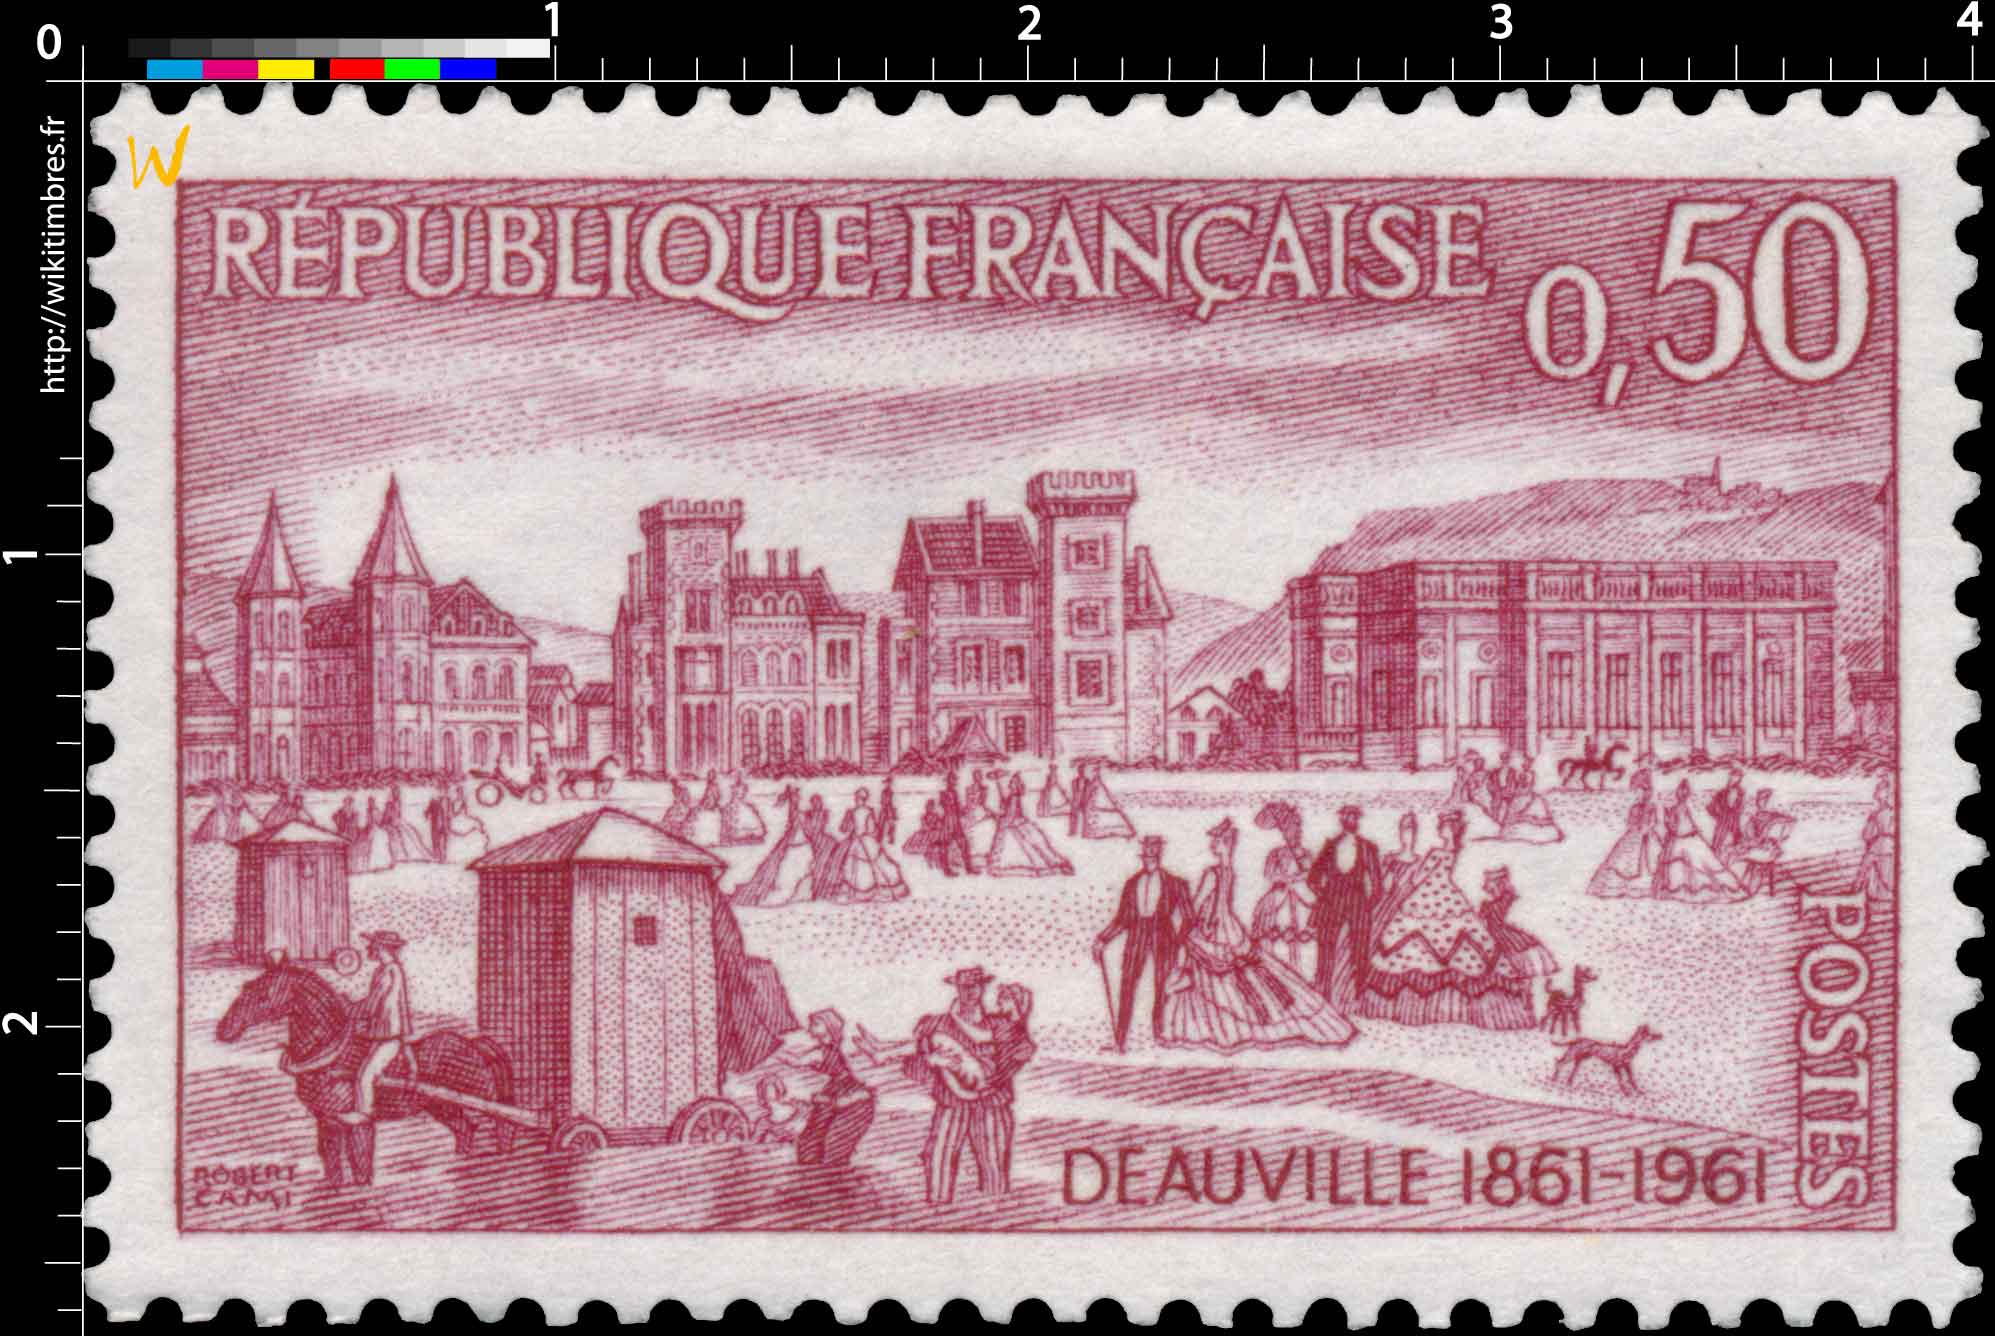 DEAUVILLE 1861-1961